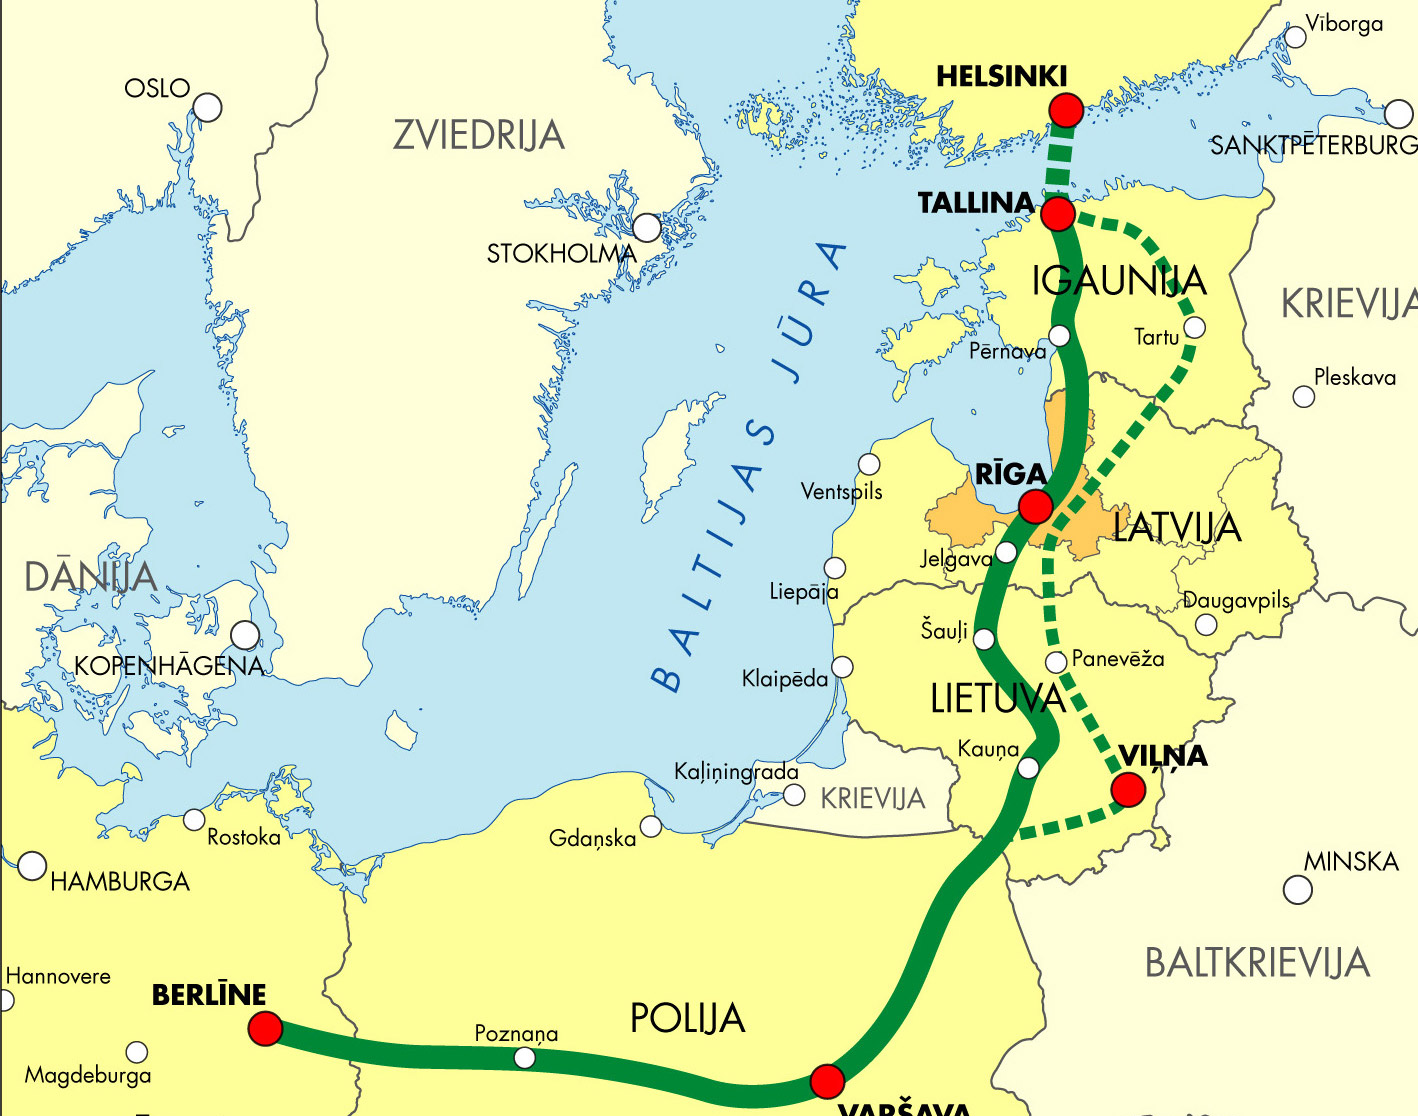 Подписано пятистороннее соглашение о создании предприятия Rail Baltic.